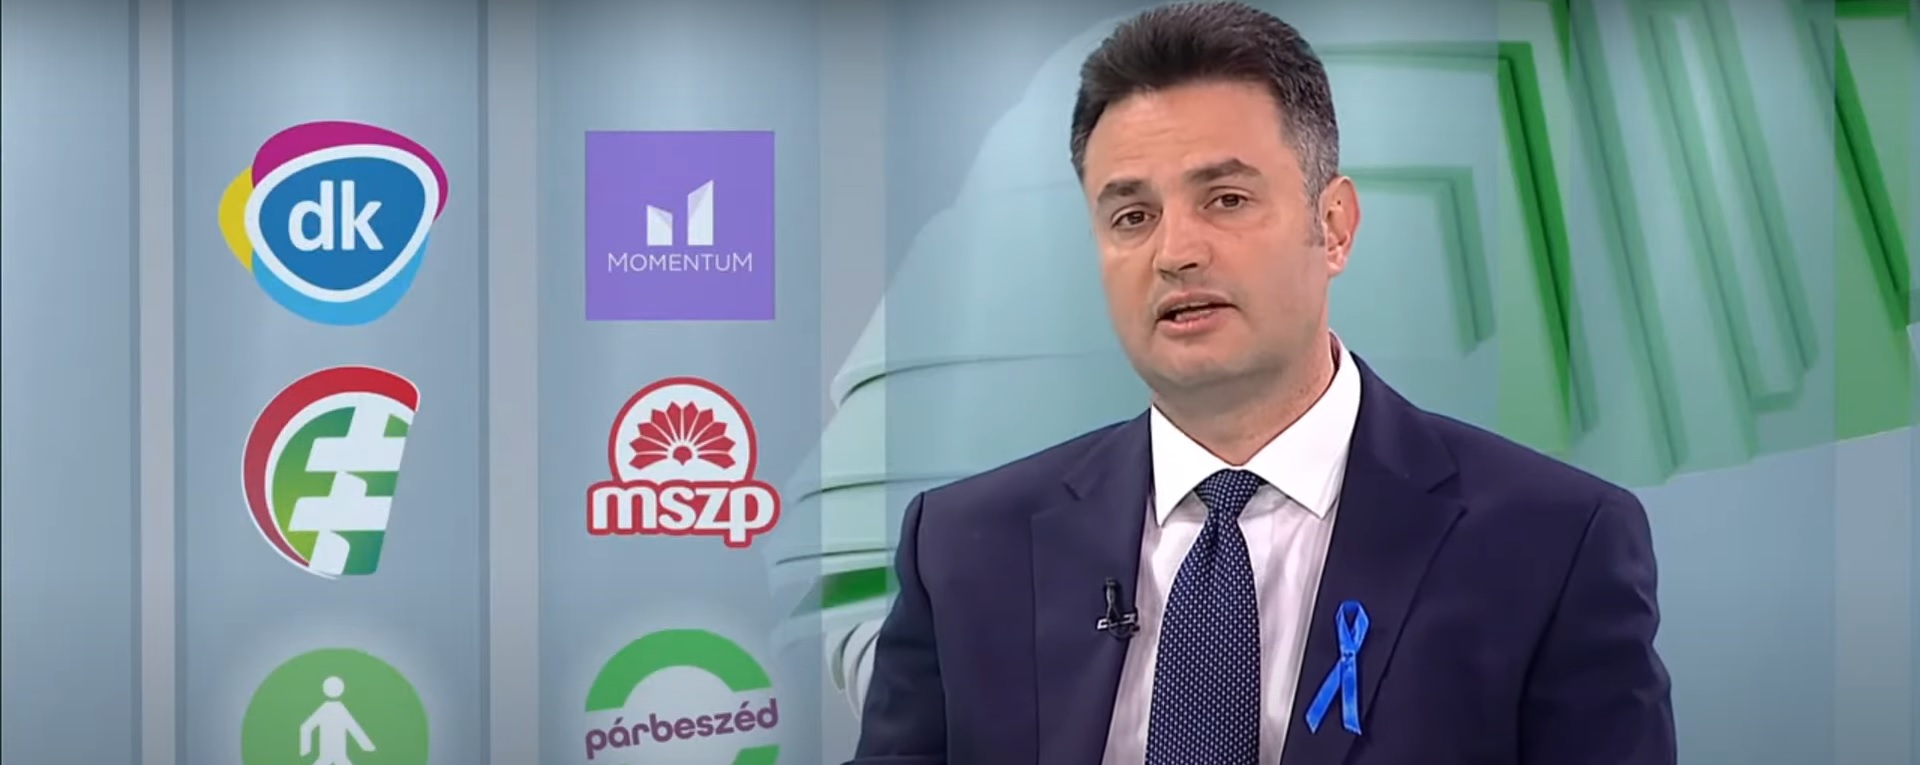 Oppositionskandidat Márki-Zay zum ersten Mal ins Staatsfernsehen eingeladen